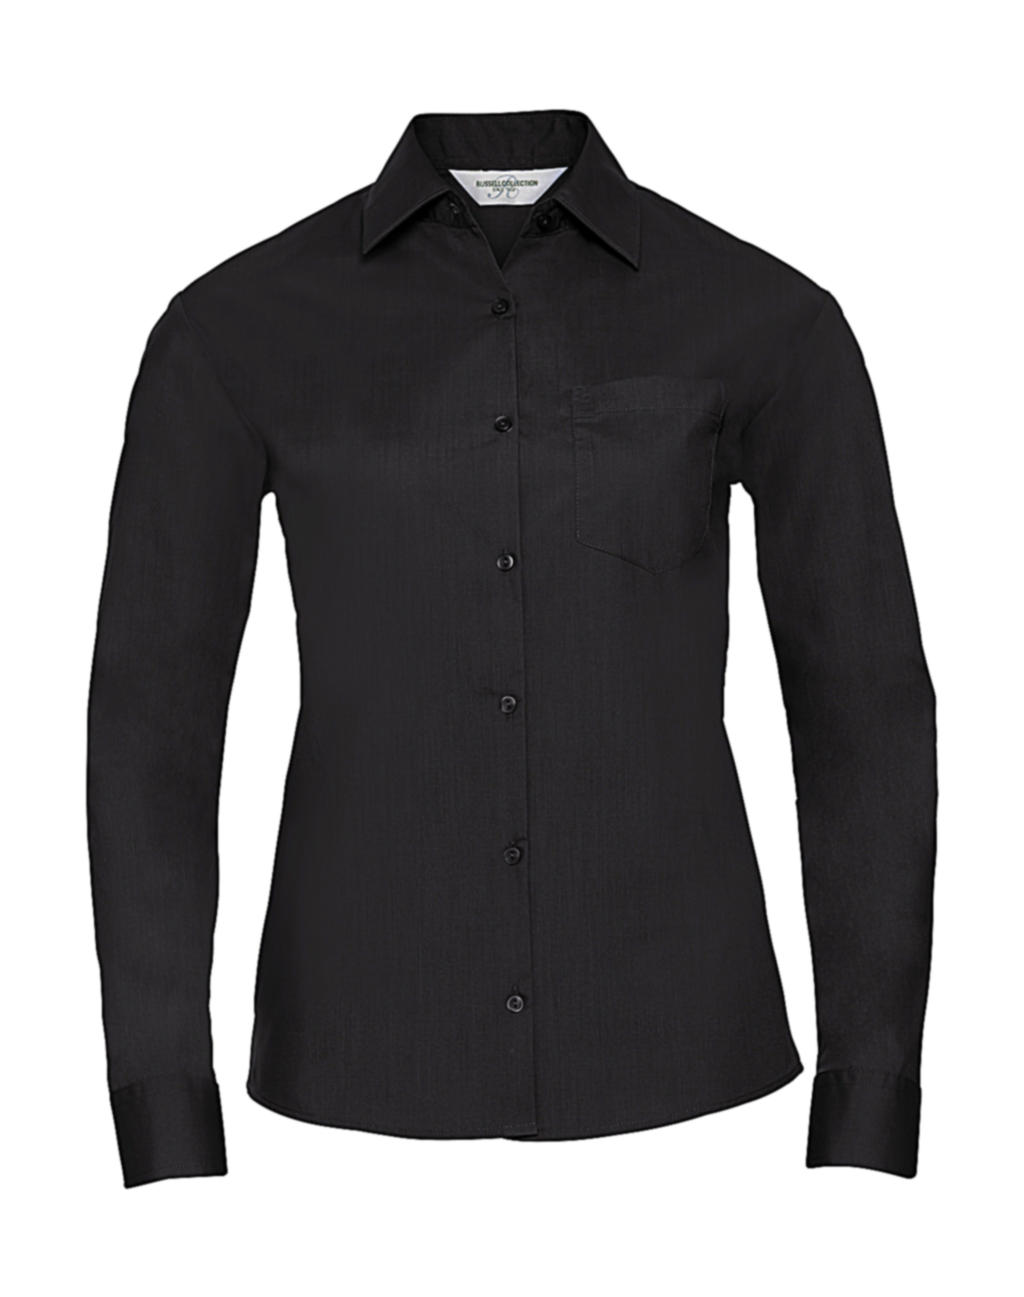  Ladies LS Poplin Shirt in Farbe Black